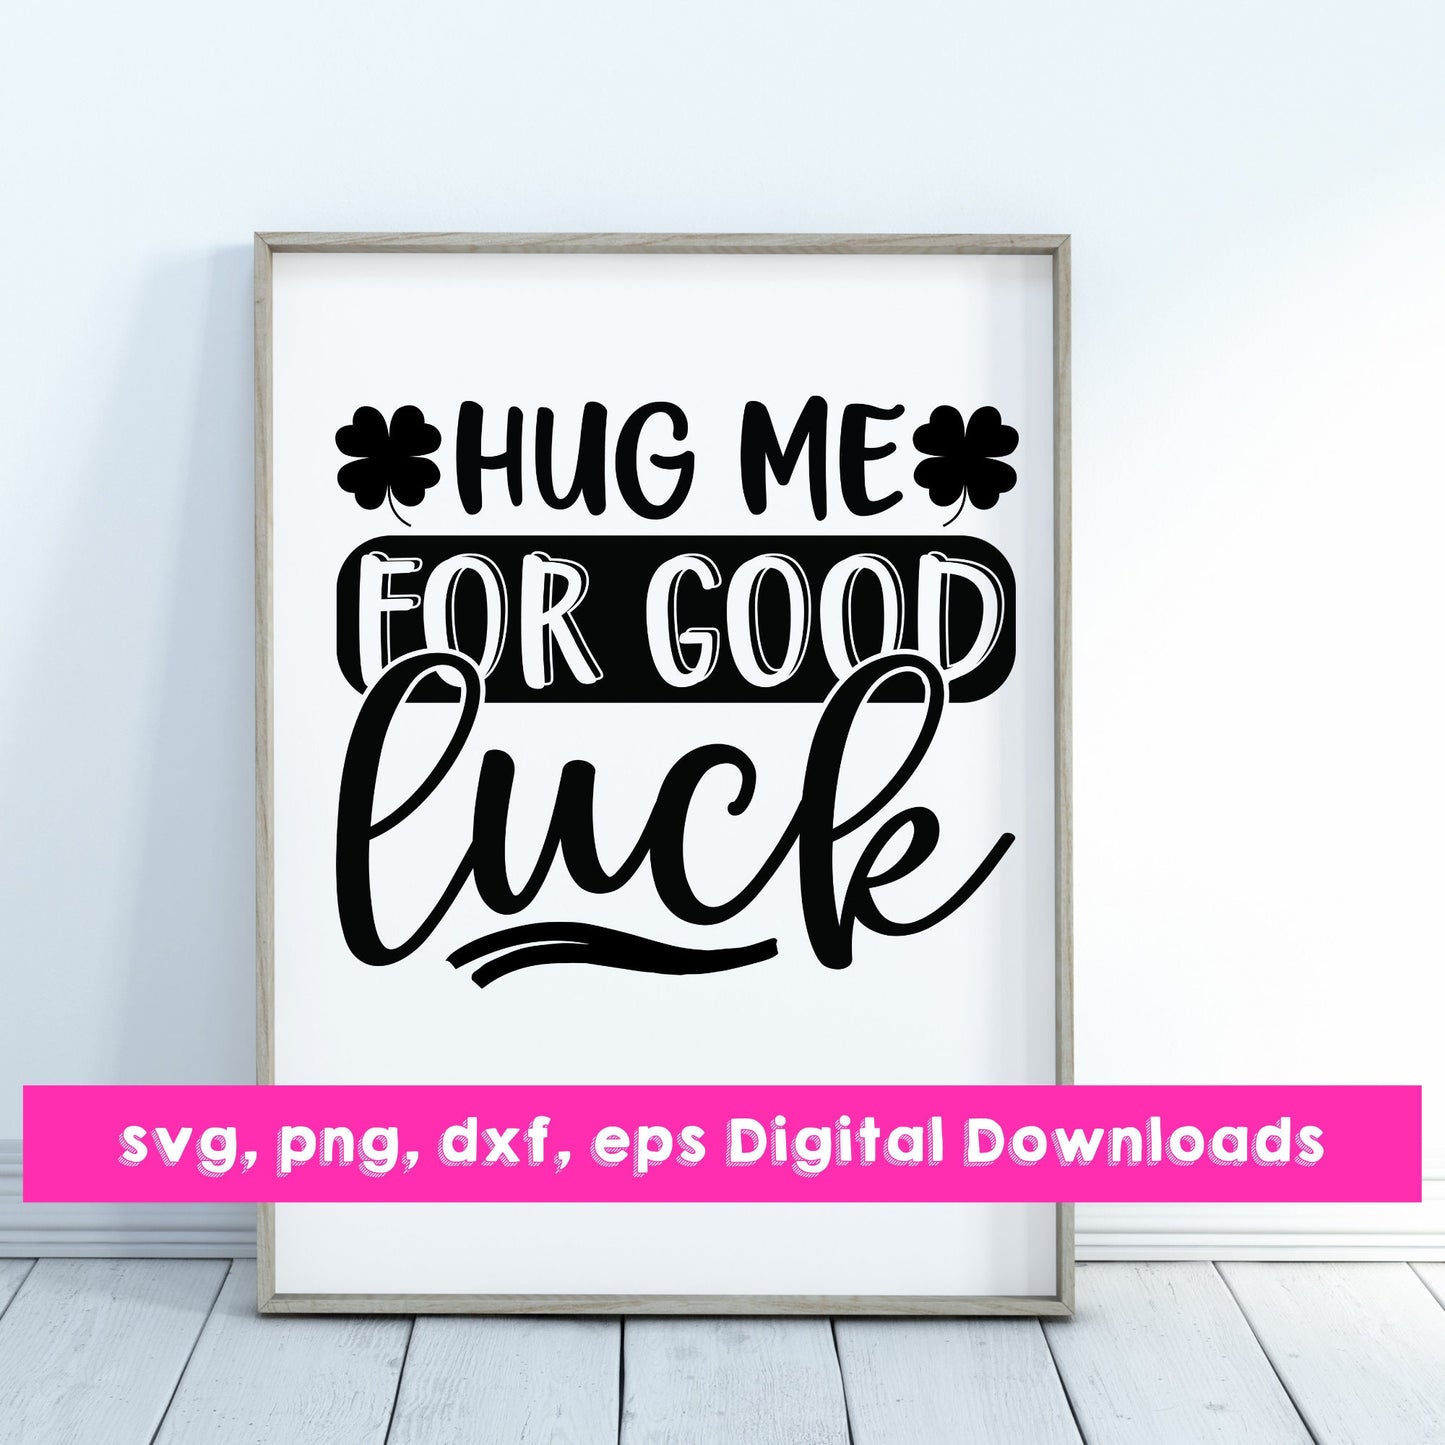 Hug me for good luck